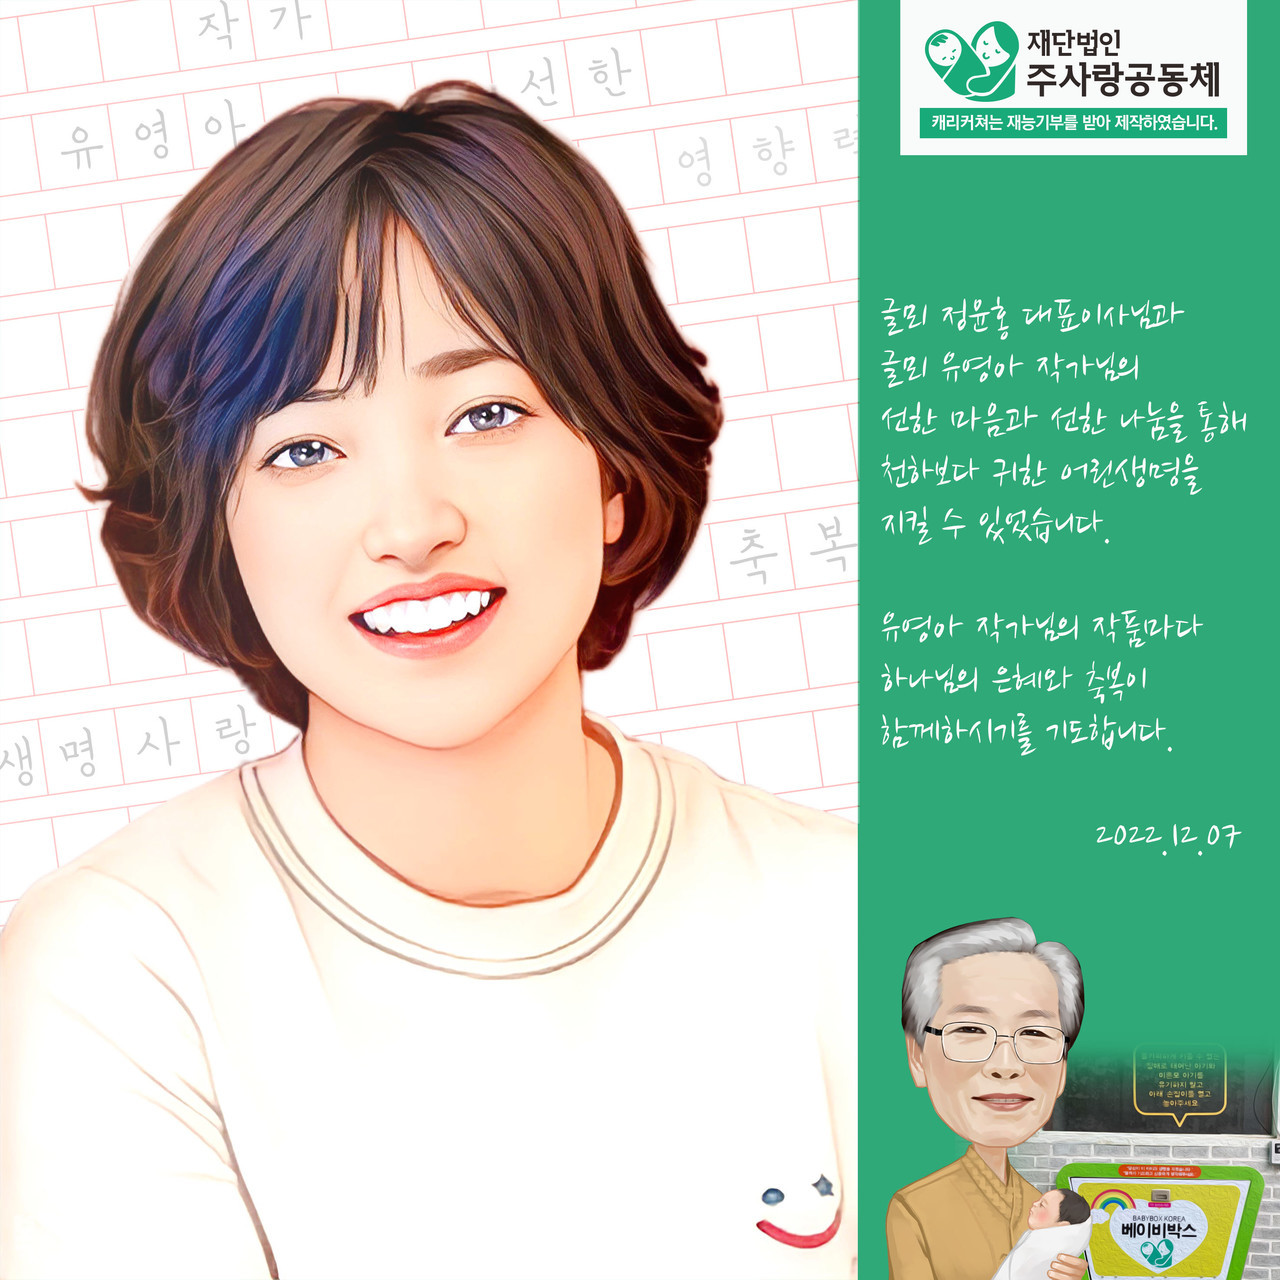 유영아 작가 캐리커처 감사 액자(주사랑공동체 베이비박스 재능기부)